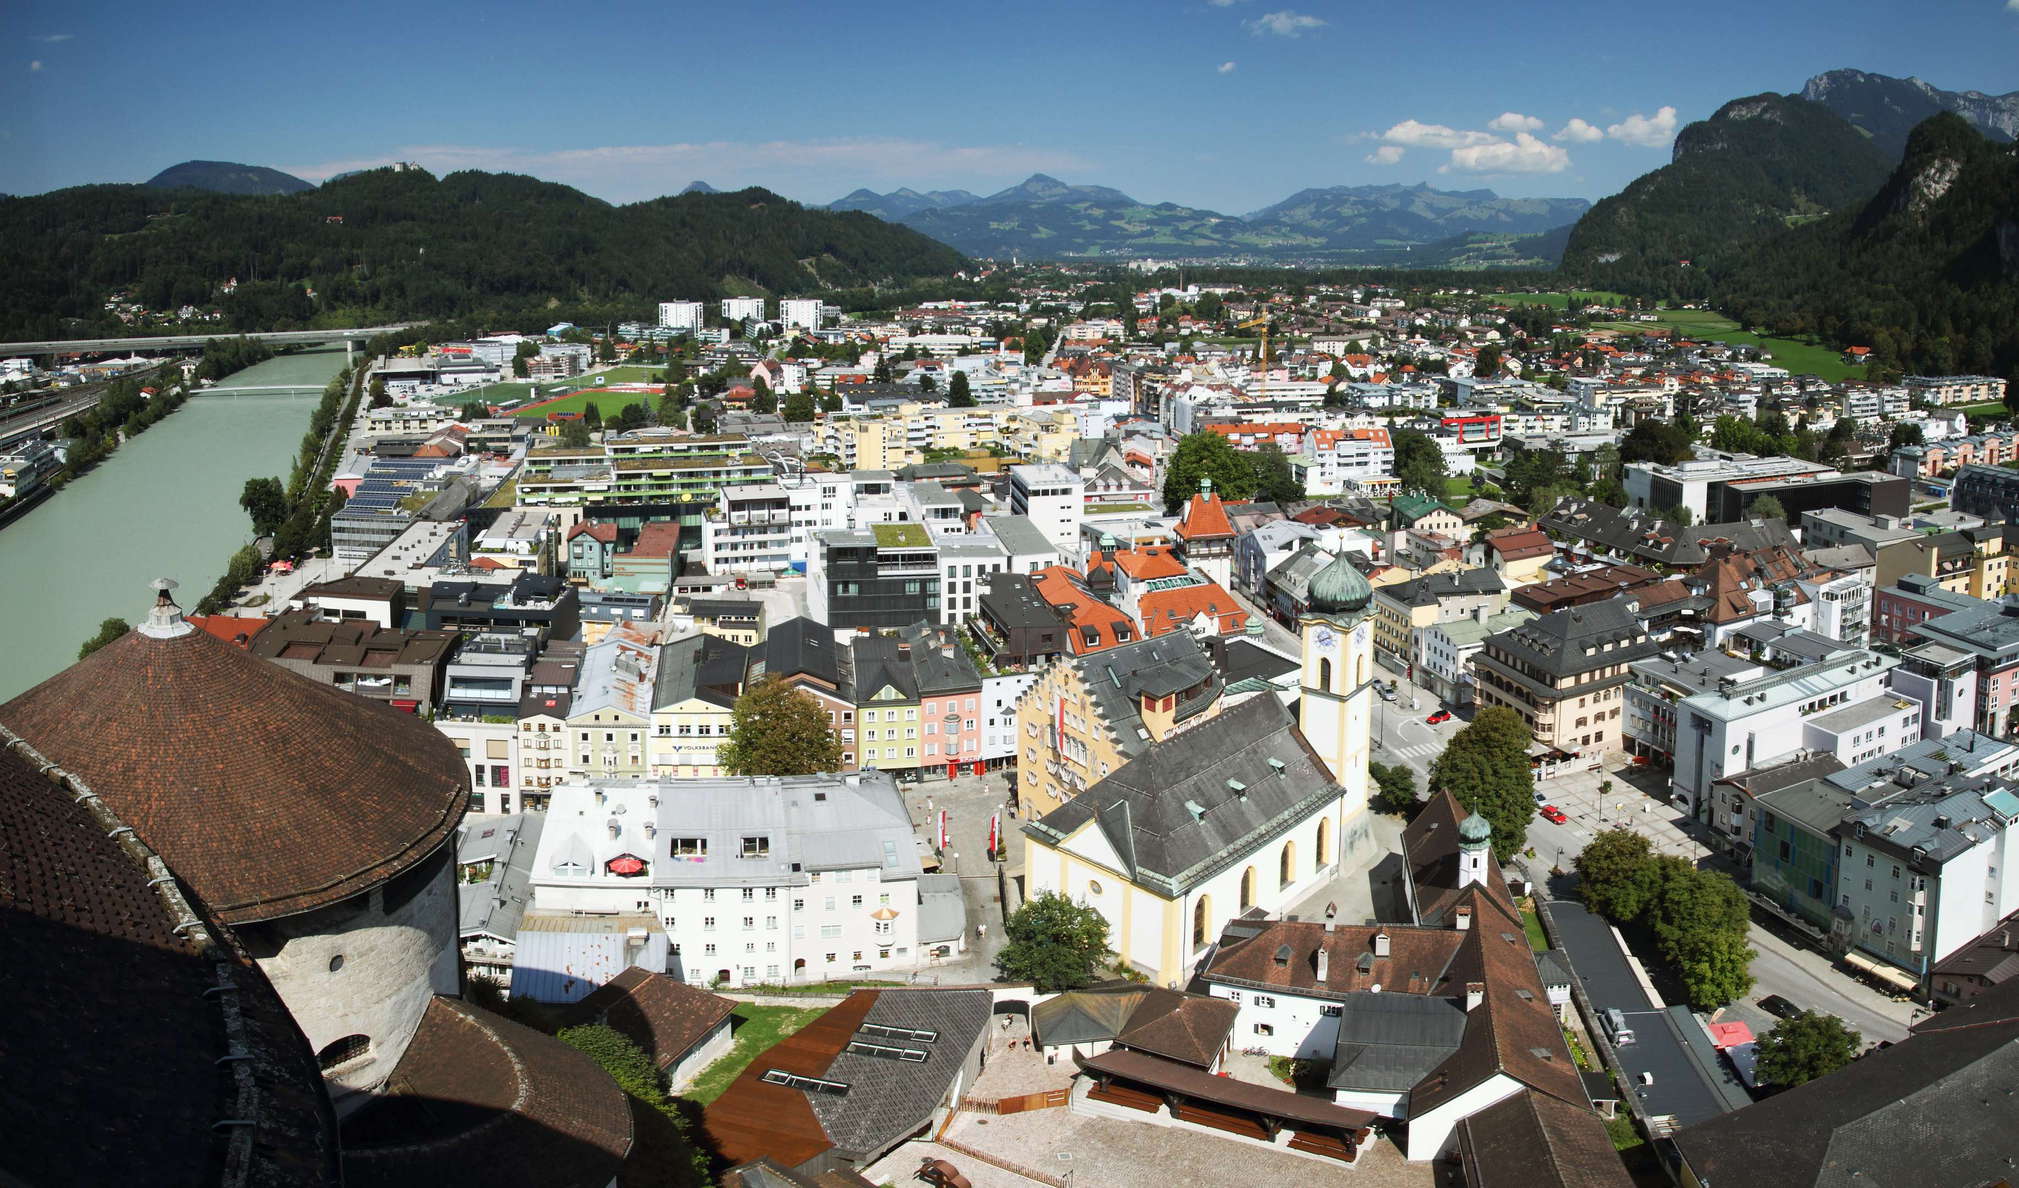 Kufstein and Inntal Valley